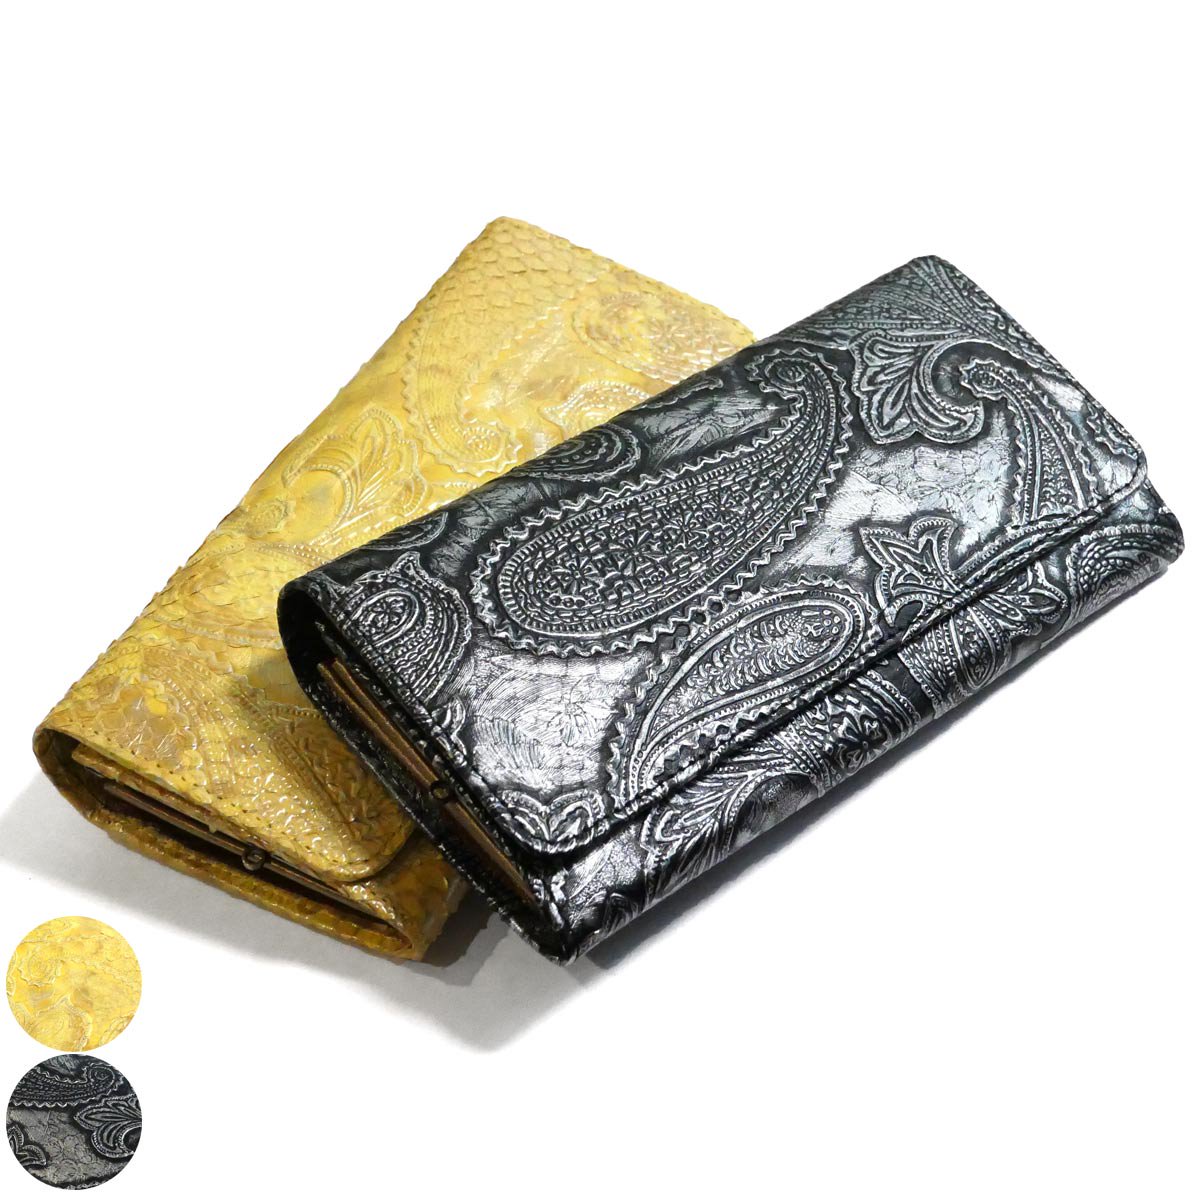 がま口 長財布 かぶせ型 / 本革 パイソン革 ダイヤモンドパイソン ペイズリー柄 全２色 / シルバー・イエロー